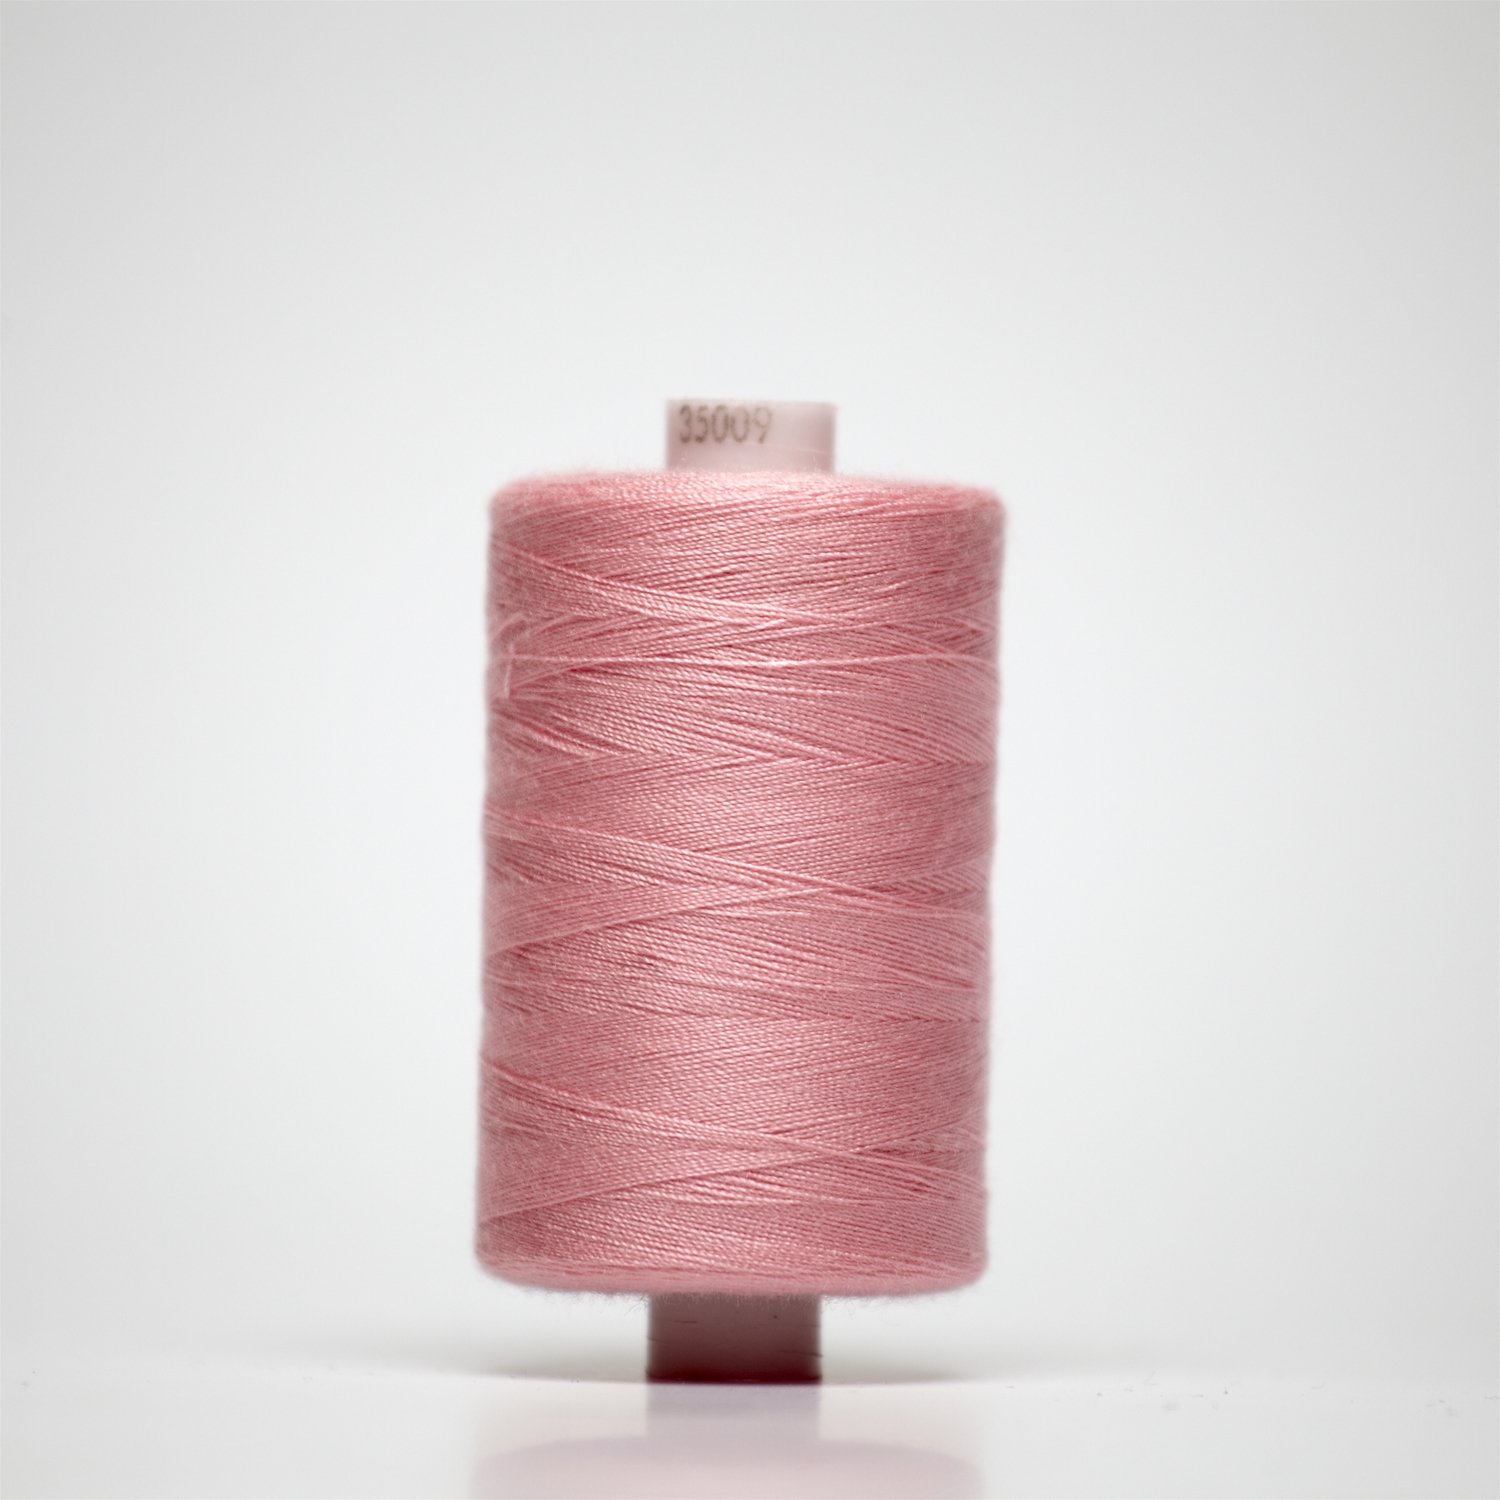 35009 | 1000y Budget Sewing Thread